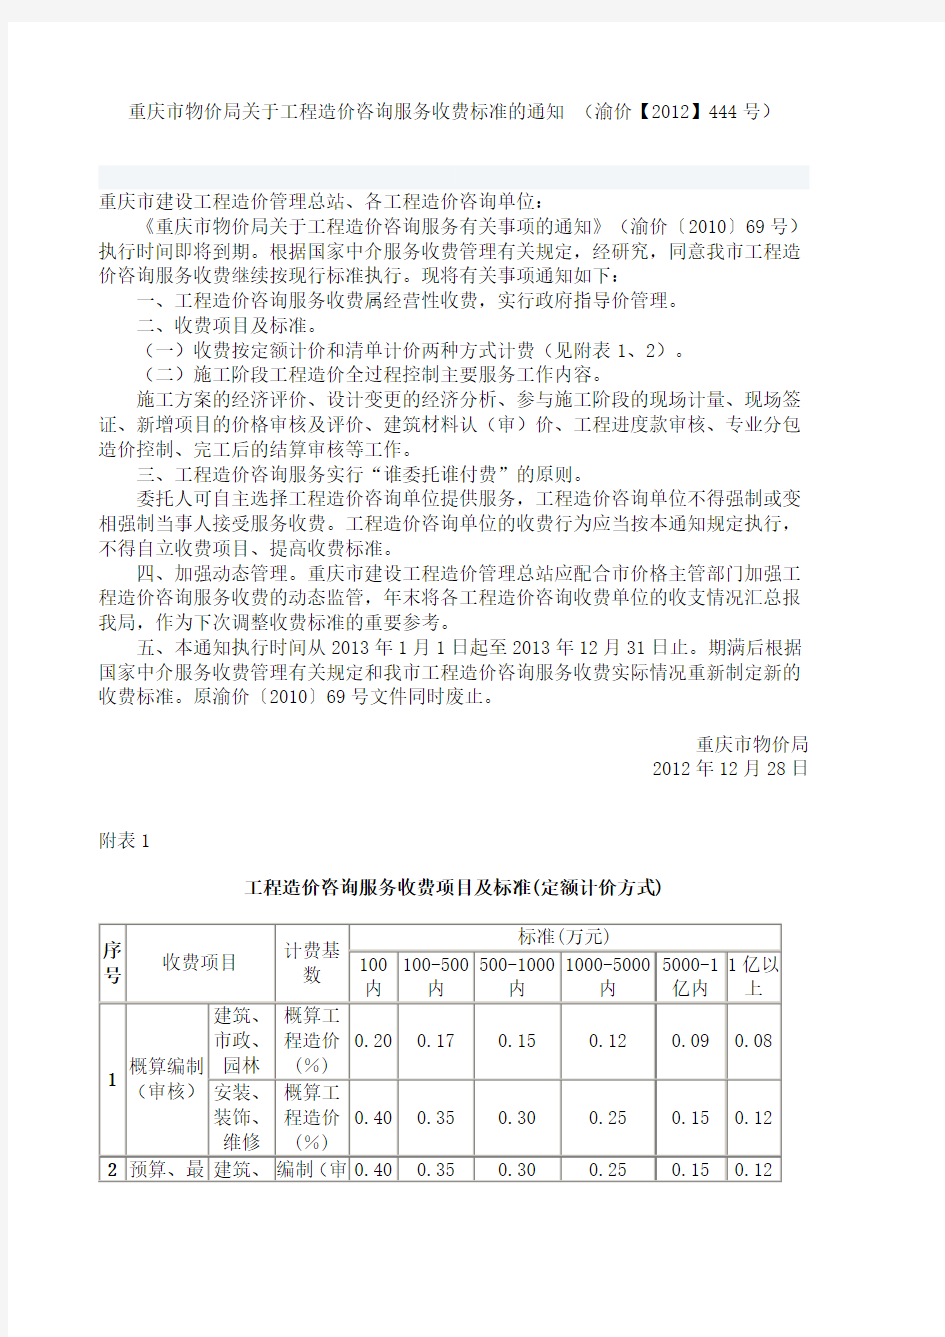 重庆市物价局关于工程造价咨询服务收费标准的通知